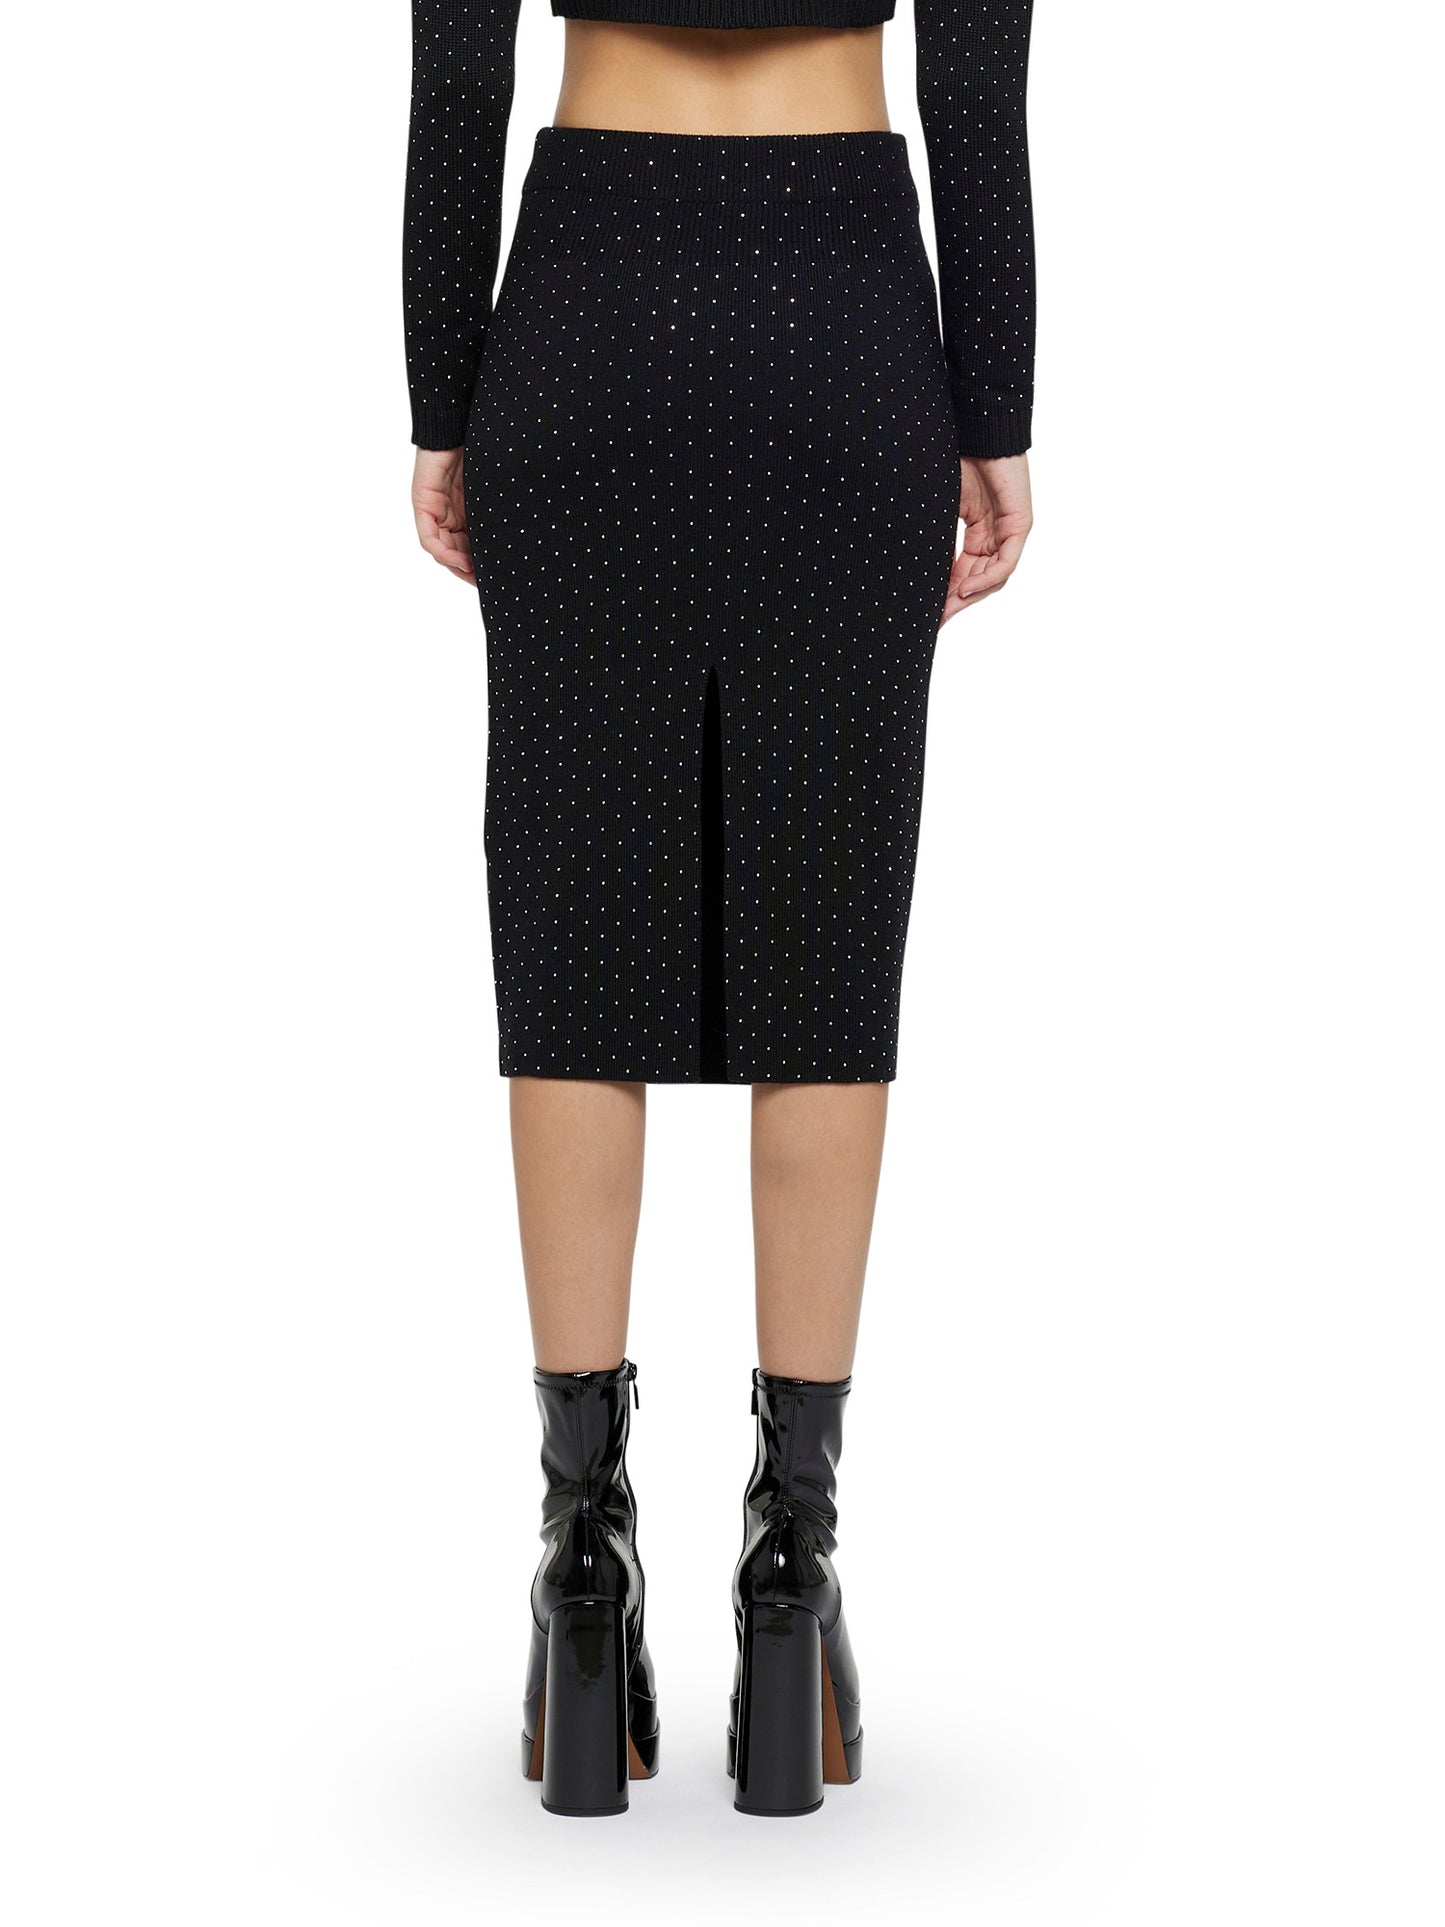 Wool-blend pencil skirt with degradé effect micro-studs